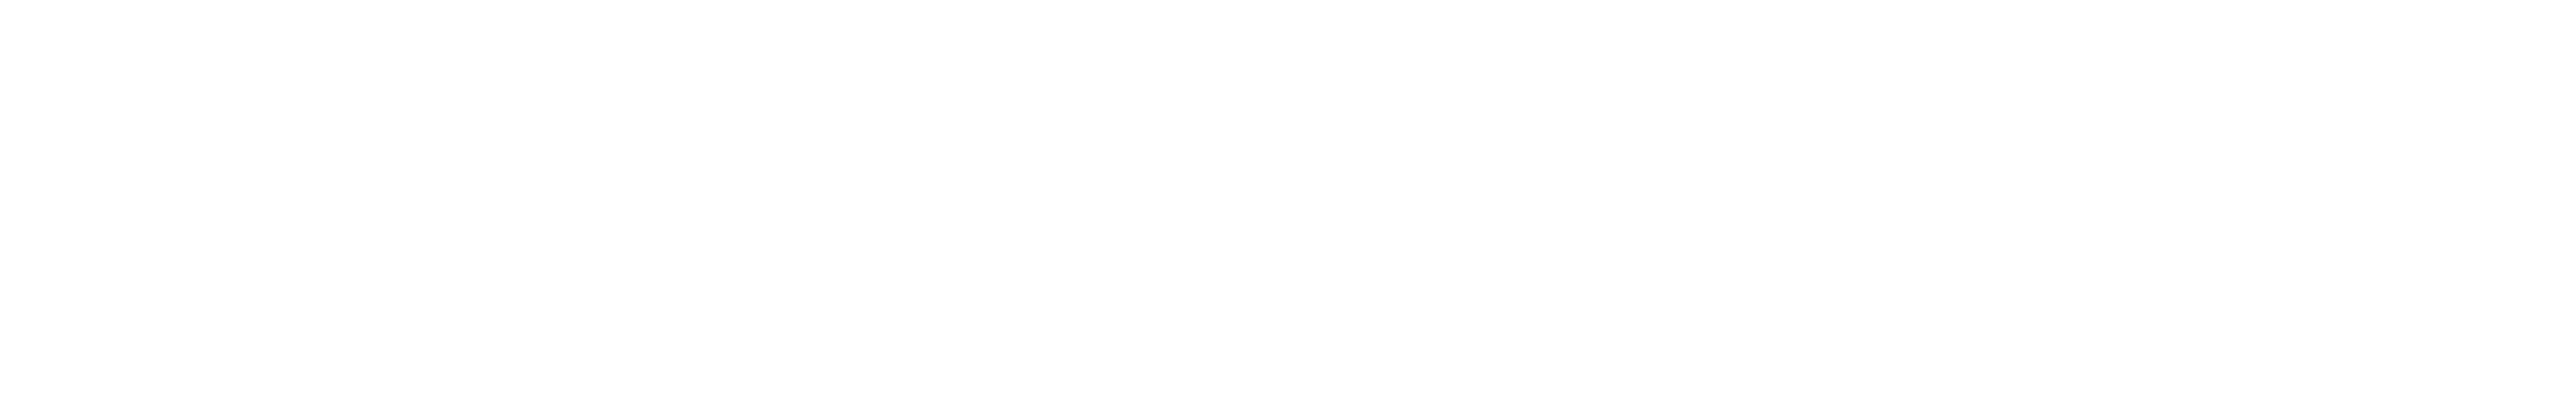 ApoSuite logo white